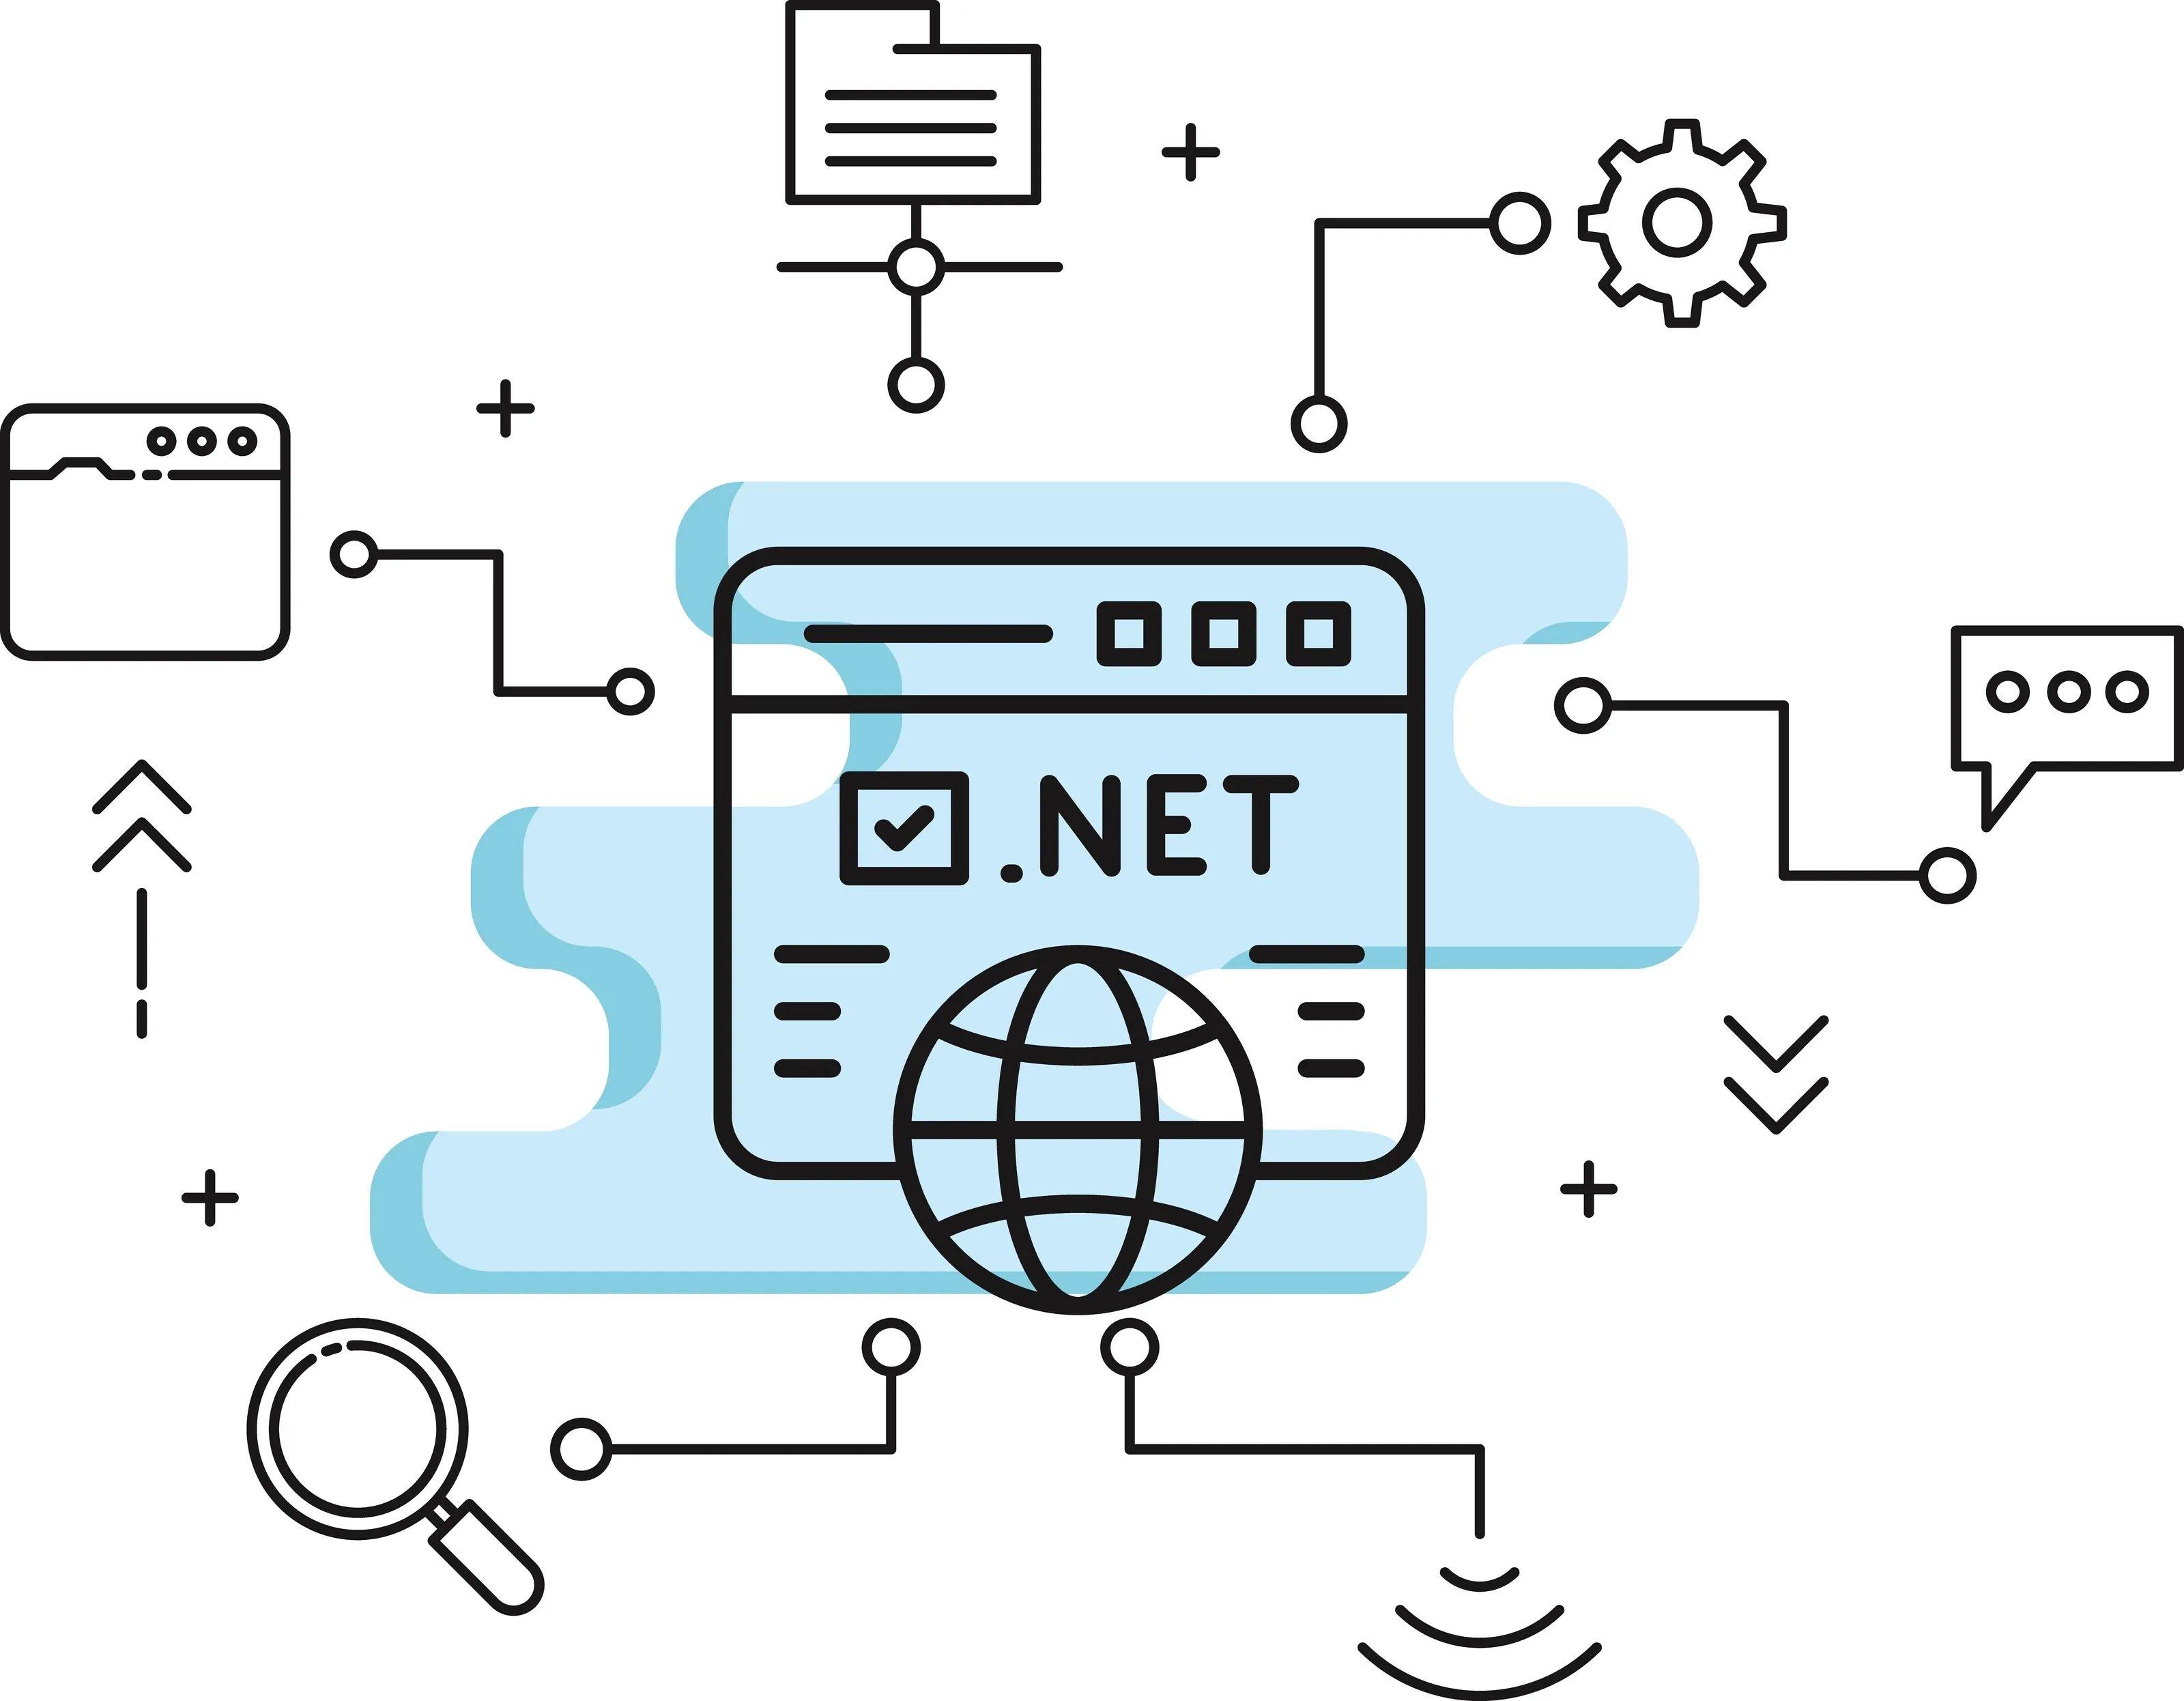 .NET framework features